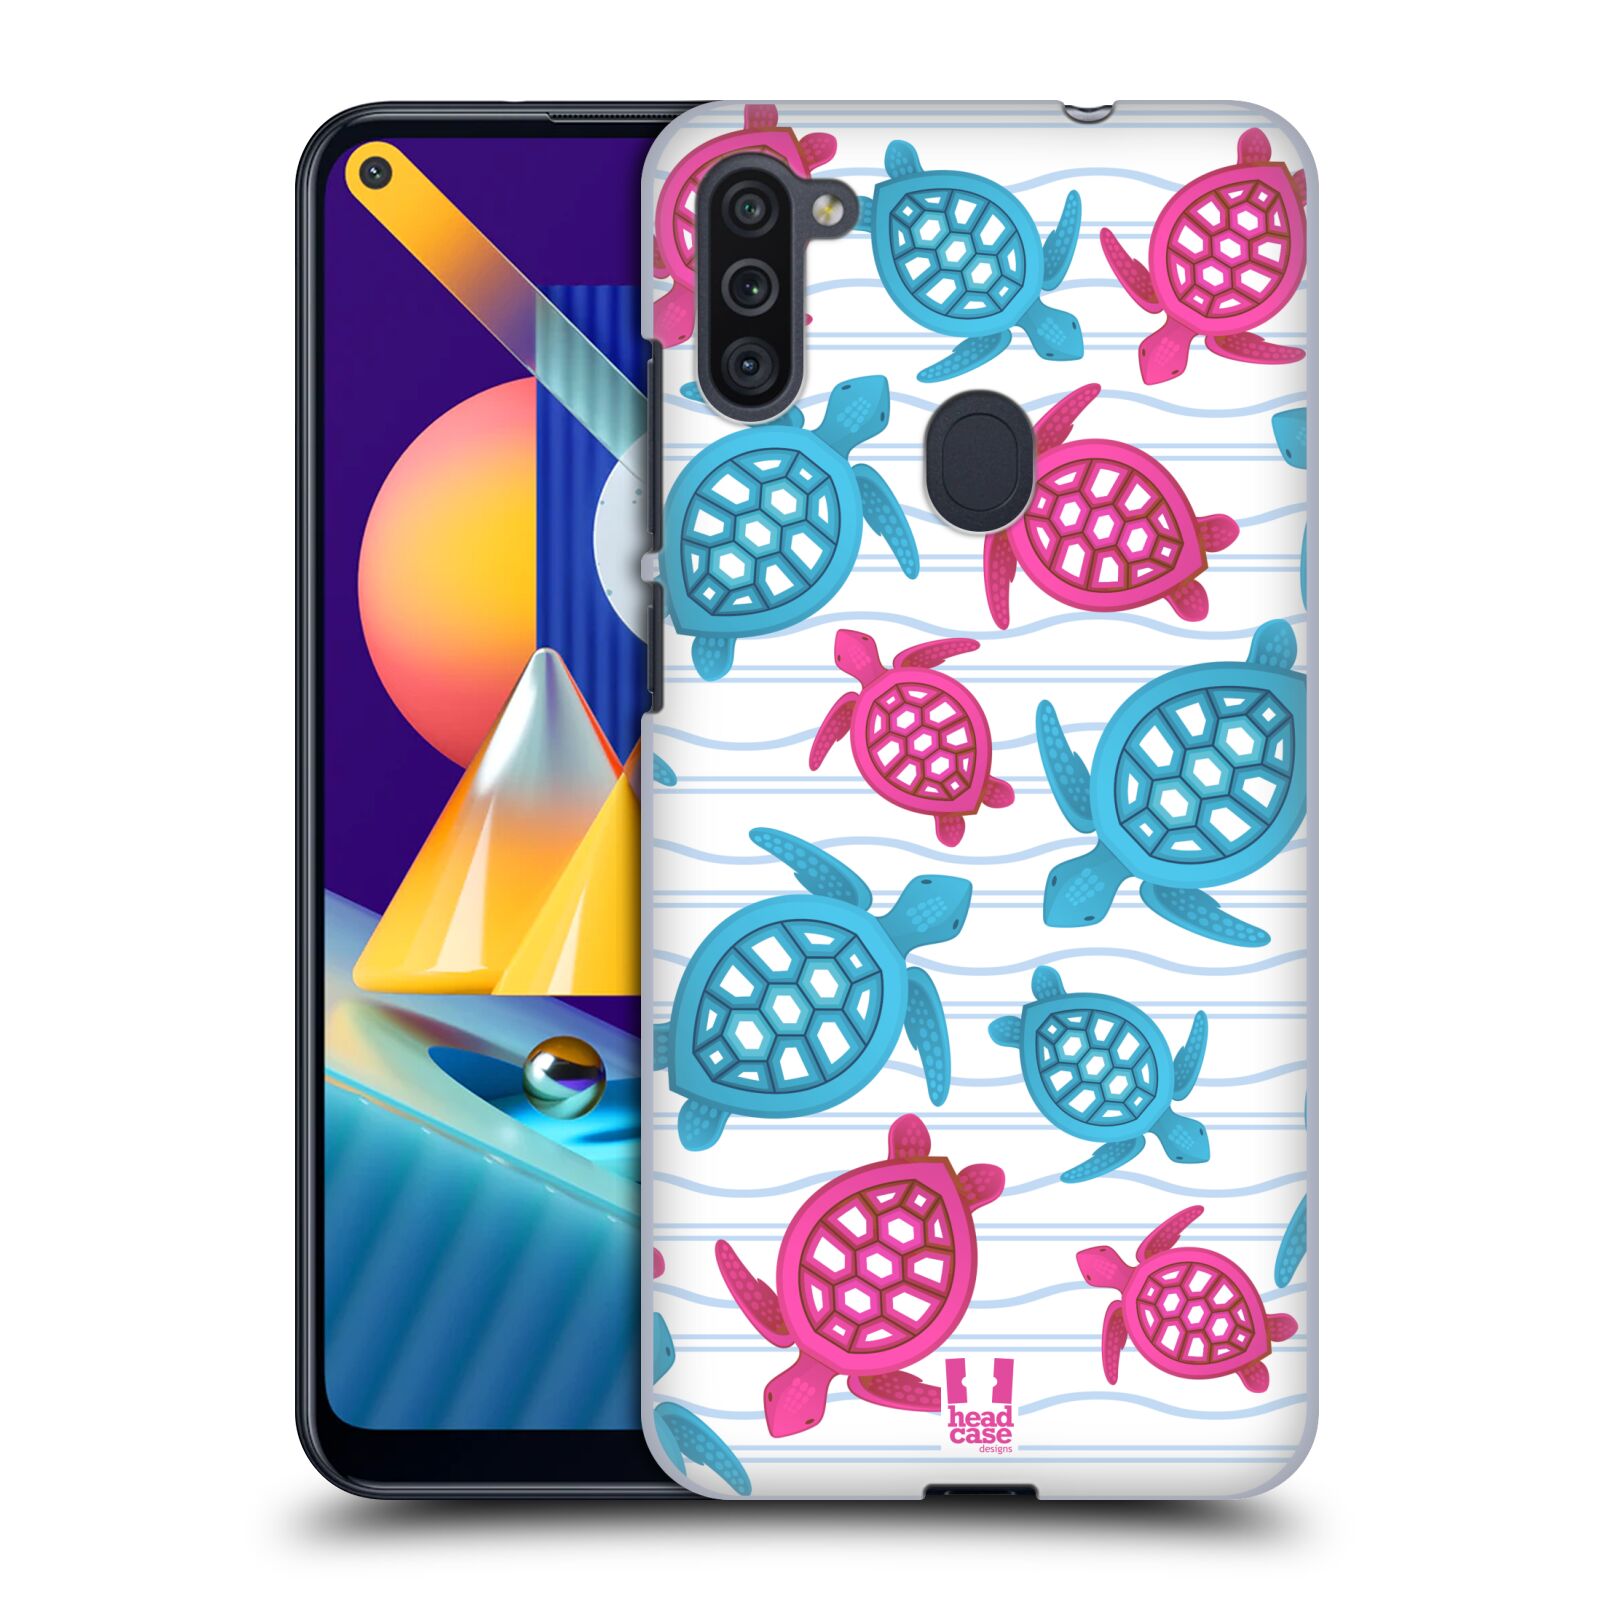 Zadní obal pro mobil Samsung Galaxy M11 - HEAD CASE - kreslený mořský vzor želvičky